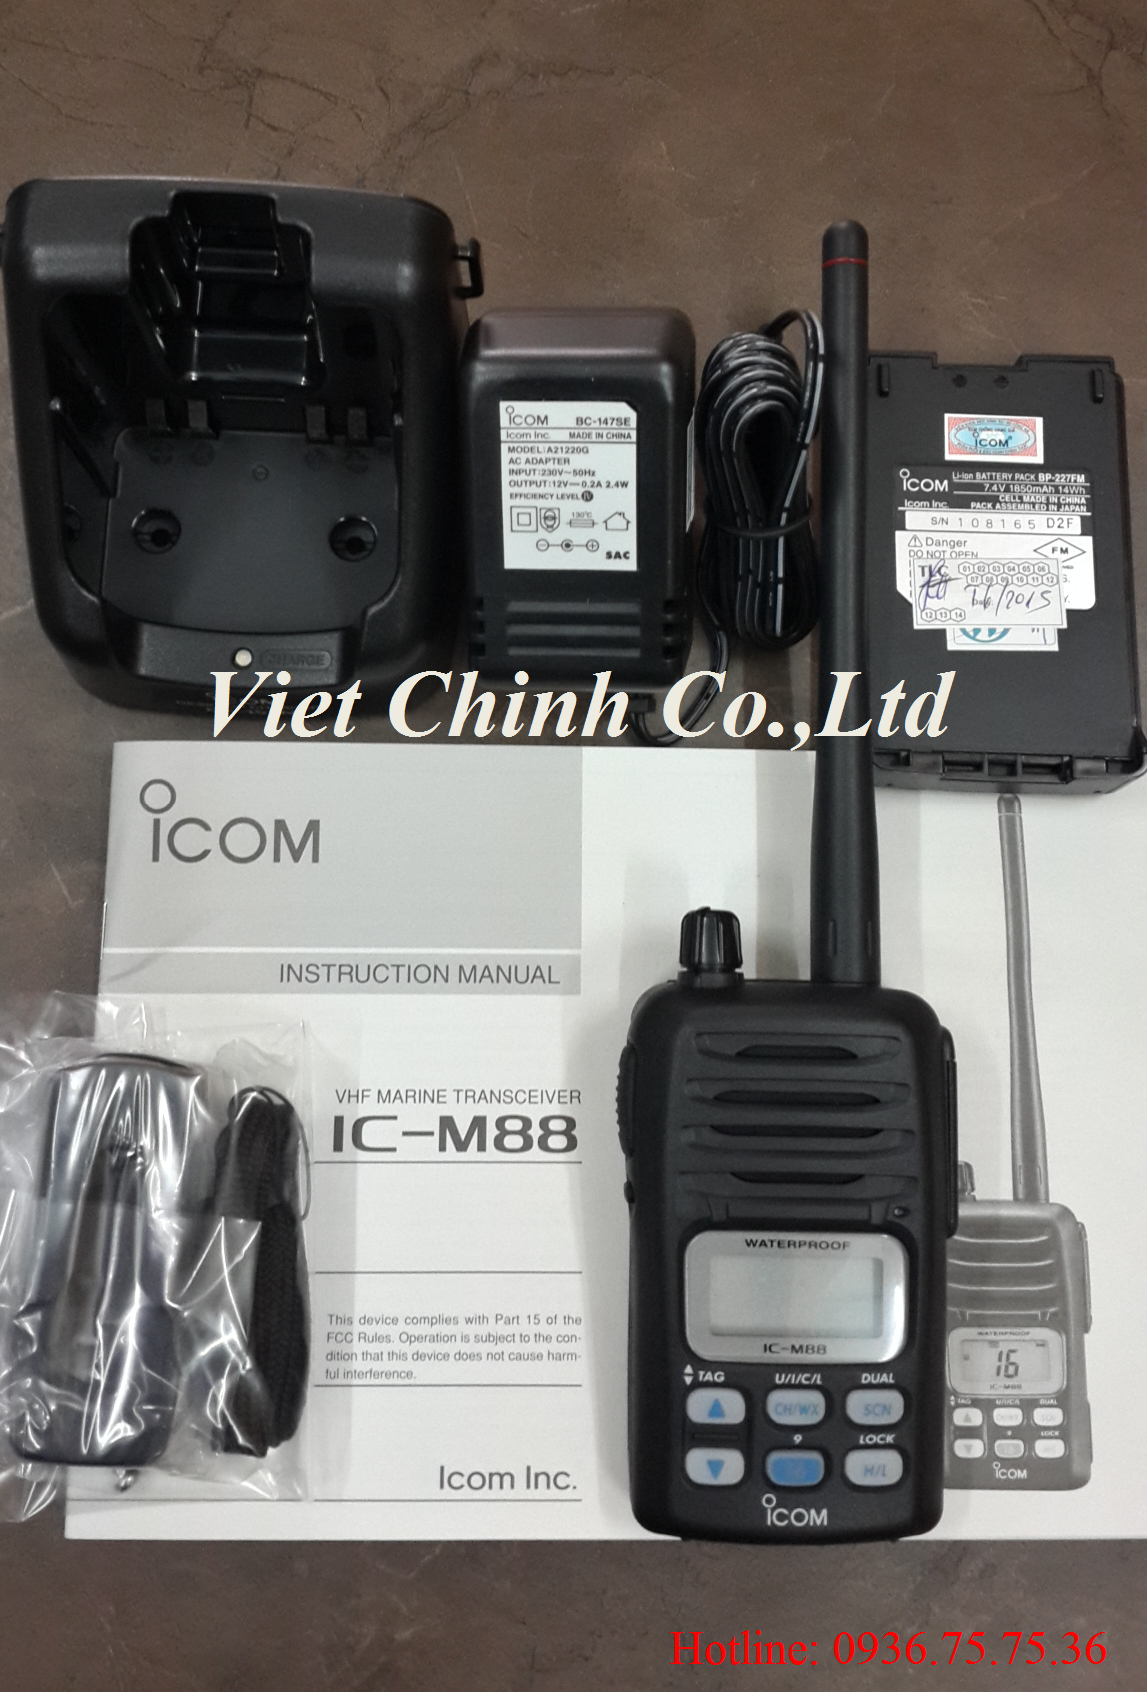 Máy bộ đàm hàng hải ICOM IC-M88 - Thiết Bị Hàng Hải Việt Chính - Công Ty TNHH Việt Chính